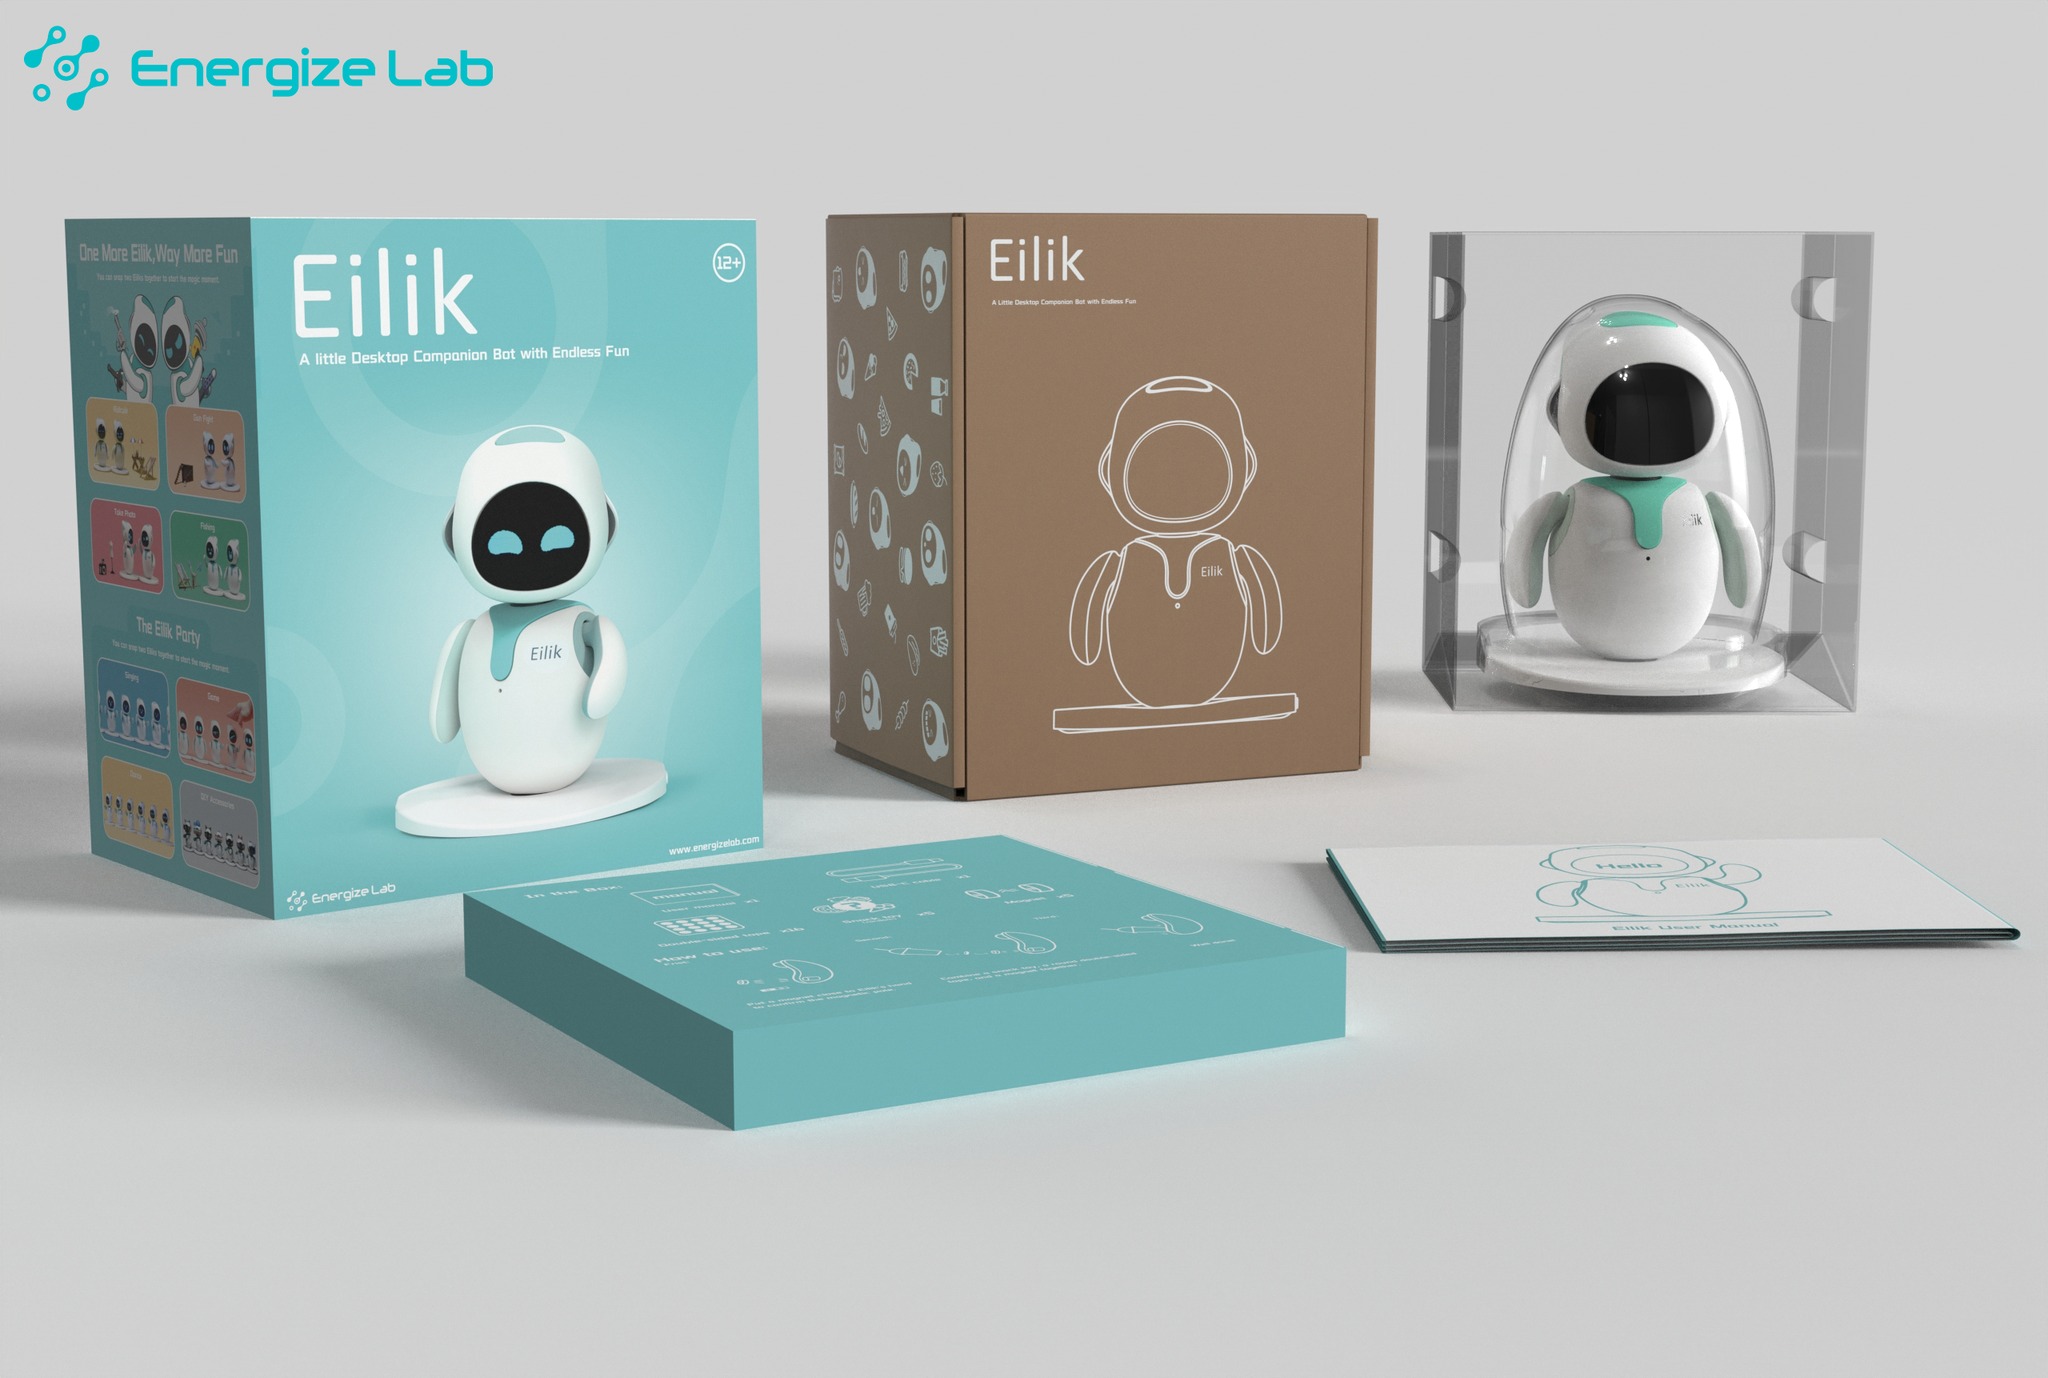 Eilik Robot by Energize Lab (please read full description)